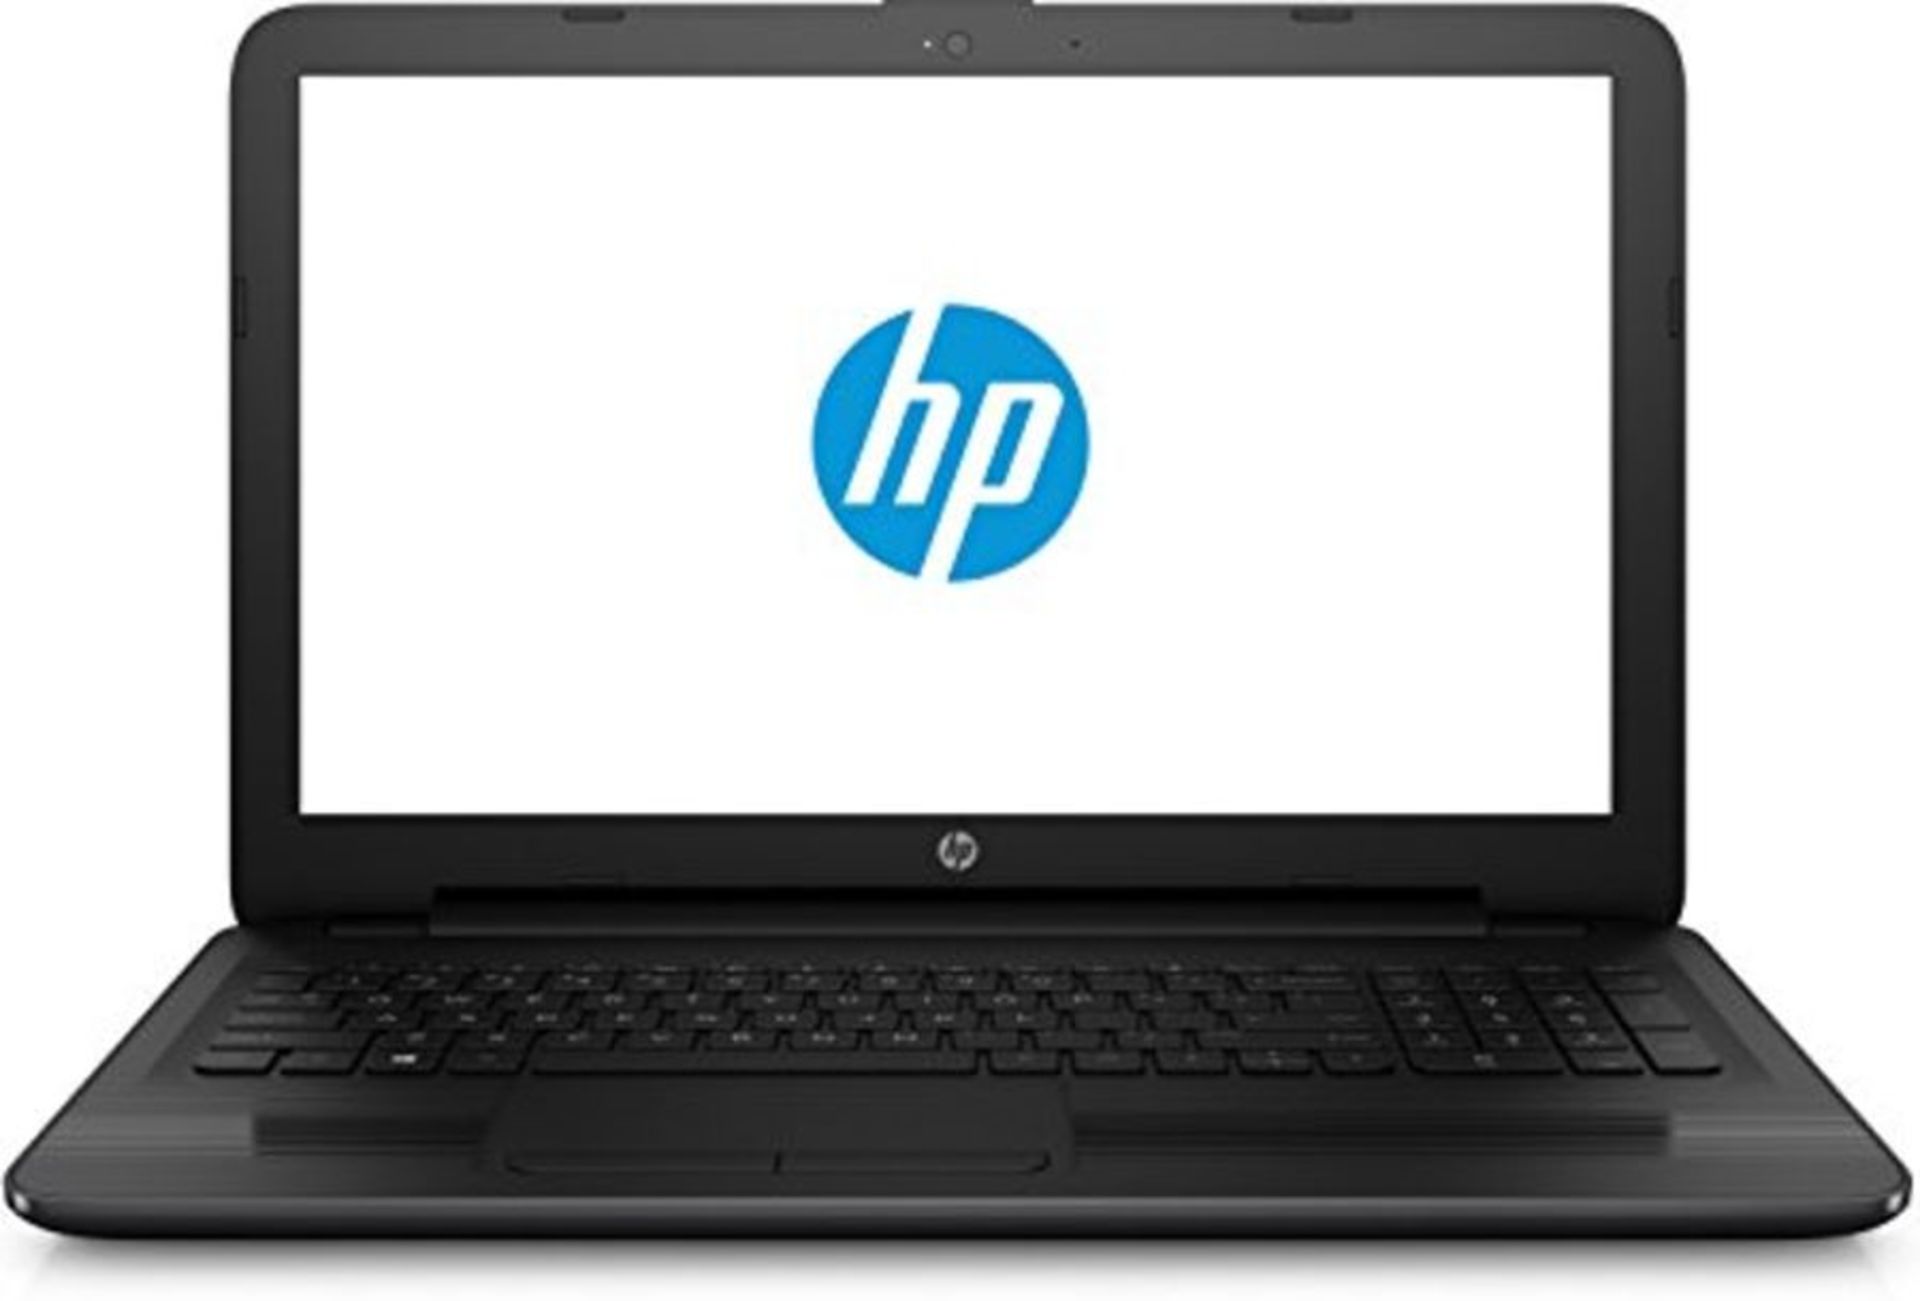 RRP £1060.00 AS NEW - HP 250 G5 Notebook, Intel Core i3- 5005u, 4 GB DDR3L, 500 GB SATA, Black